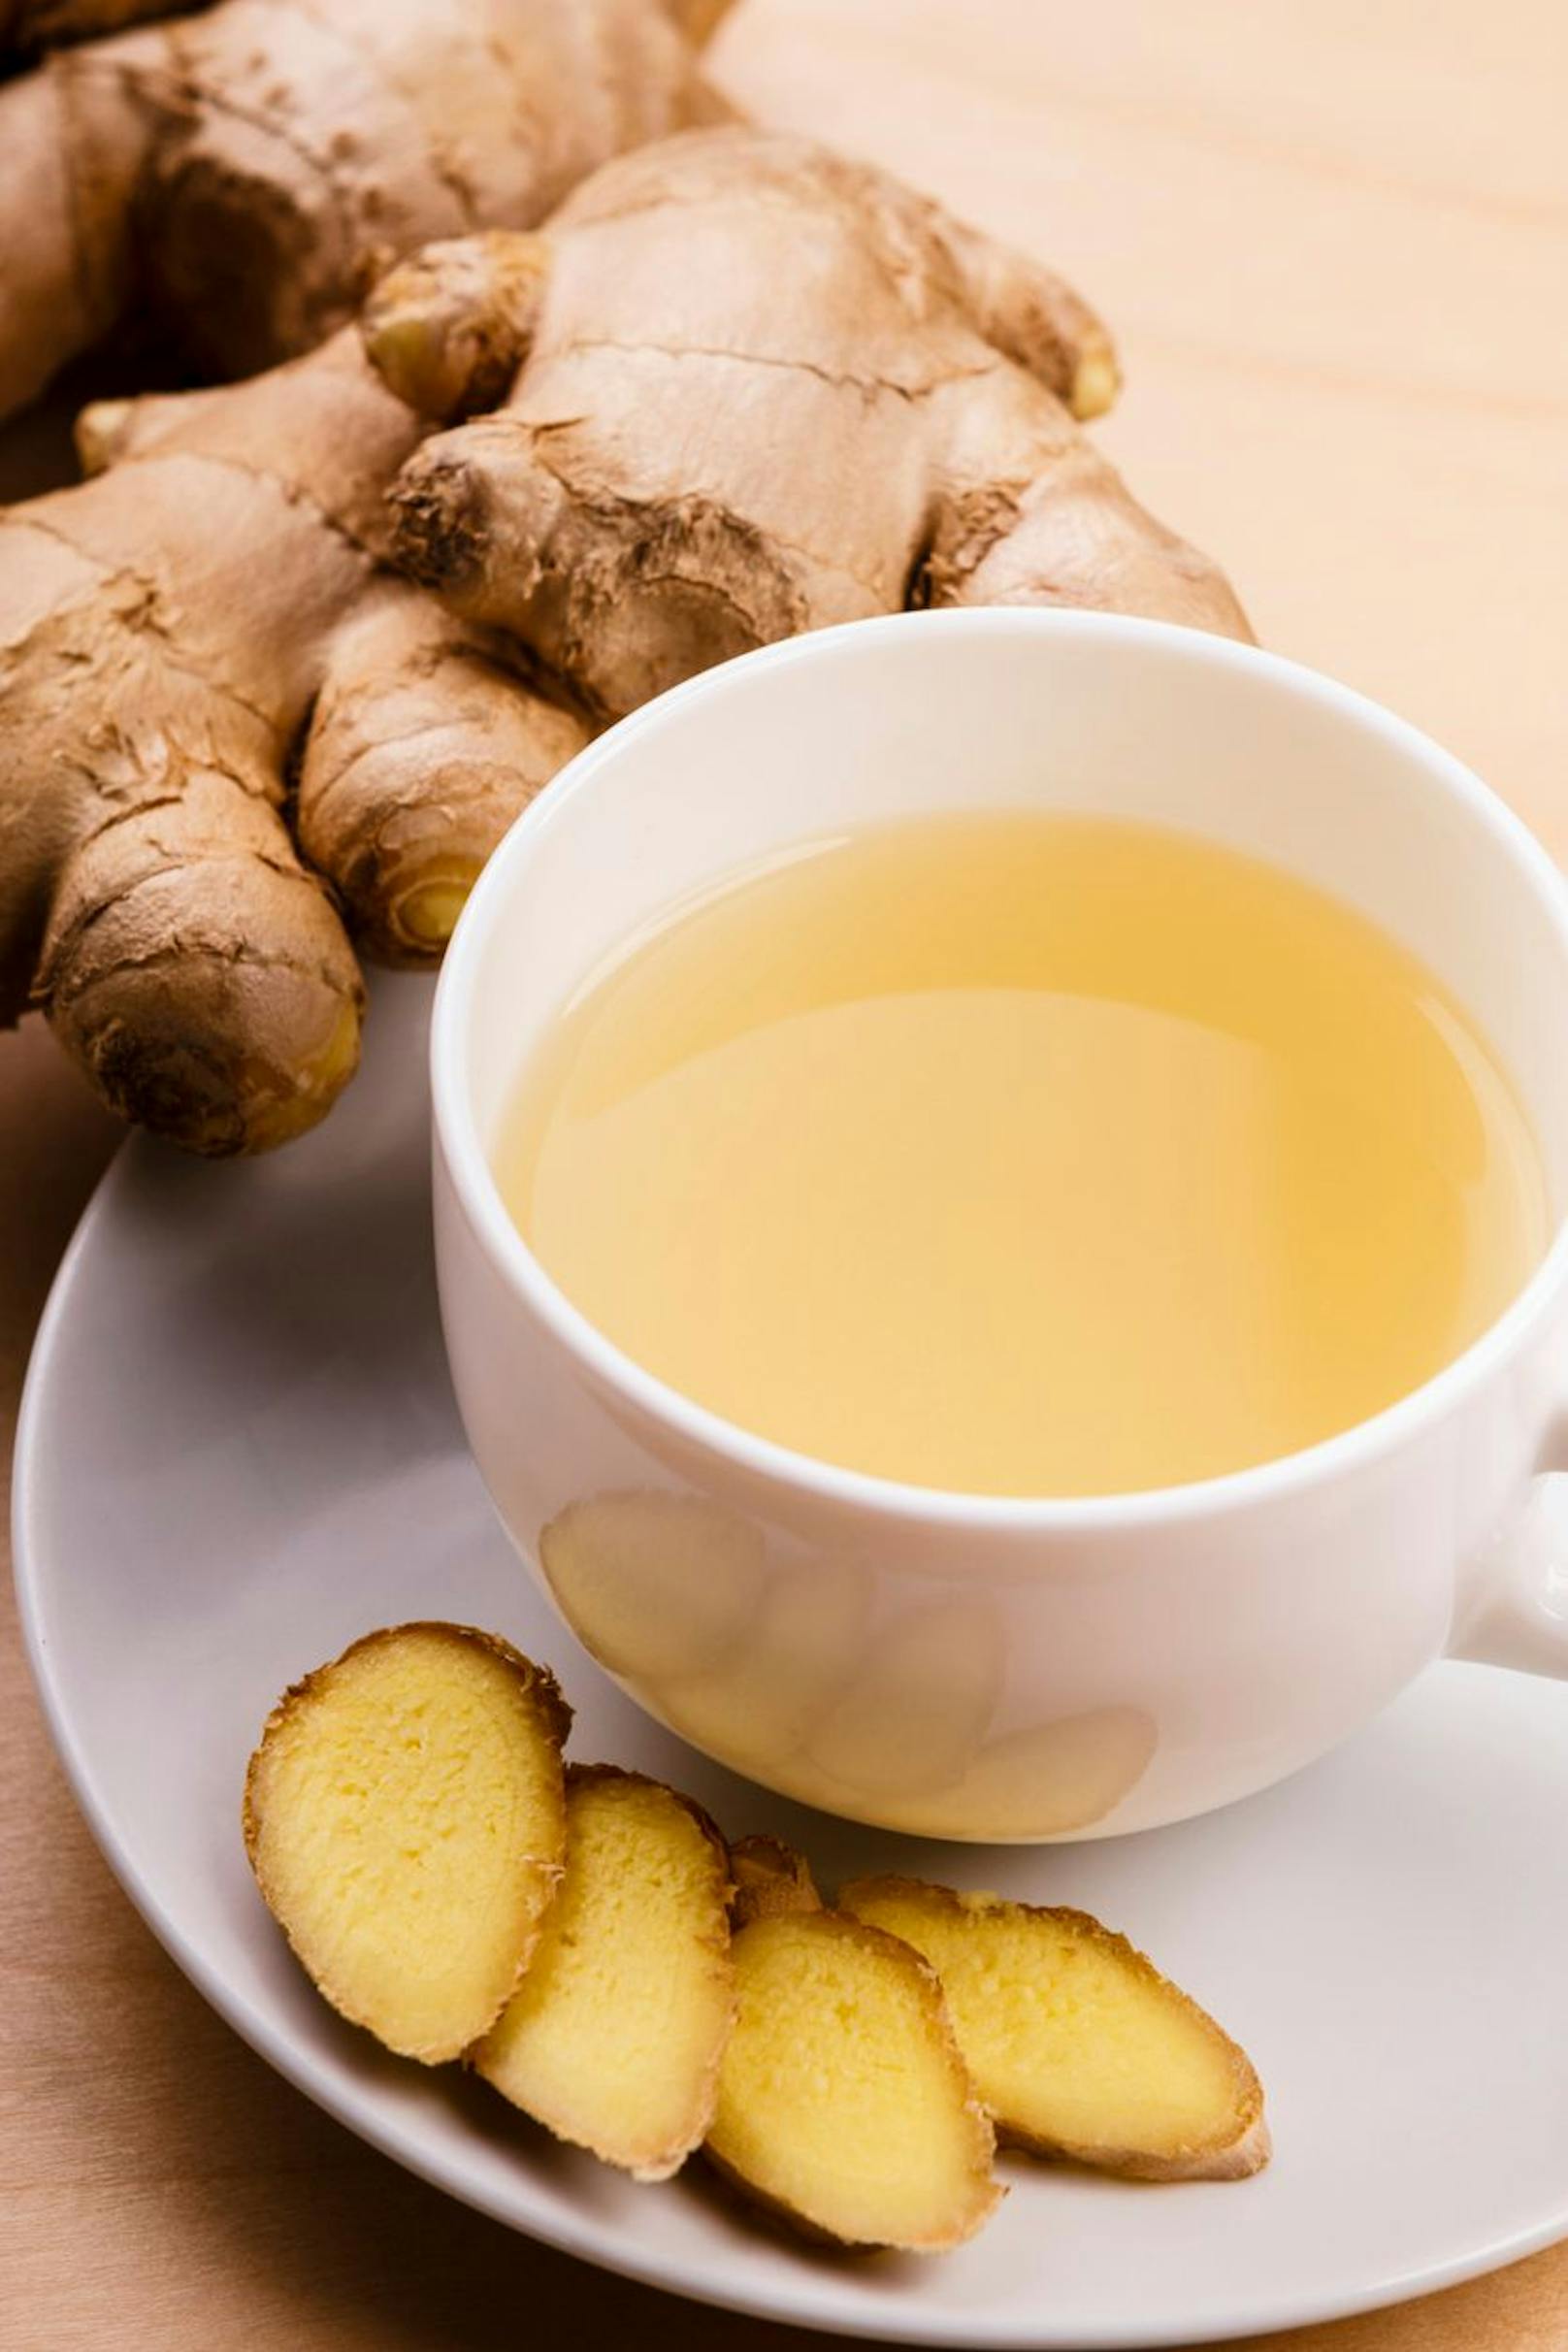 Ein guter Abnehm-Drink wäre eine einfache Tasse Tee. Ohne Zucker, Milch oder sonstigen Geschmacksverstärkern eignet sich etwa ein frischer Ingwer-Tee als idealer Drink für die Fettverbrennung. 